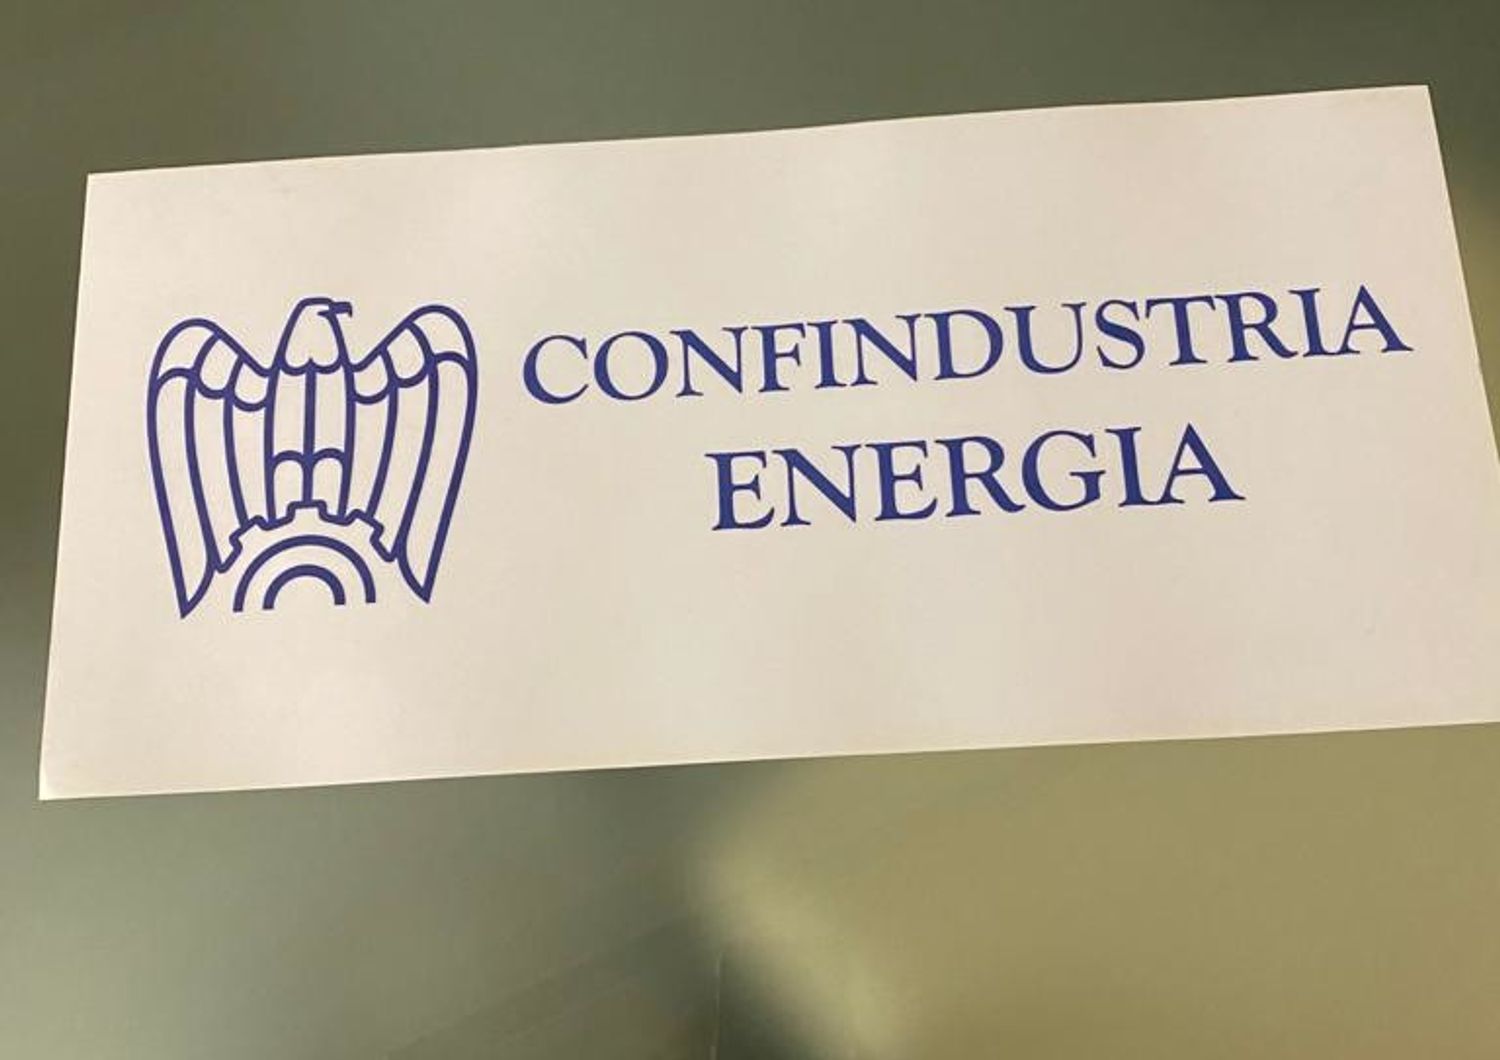 Confindustria Energia